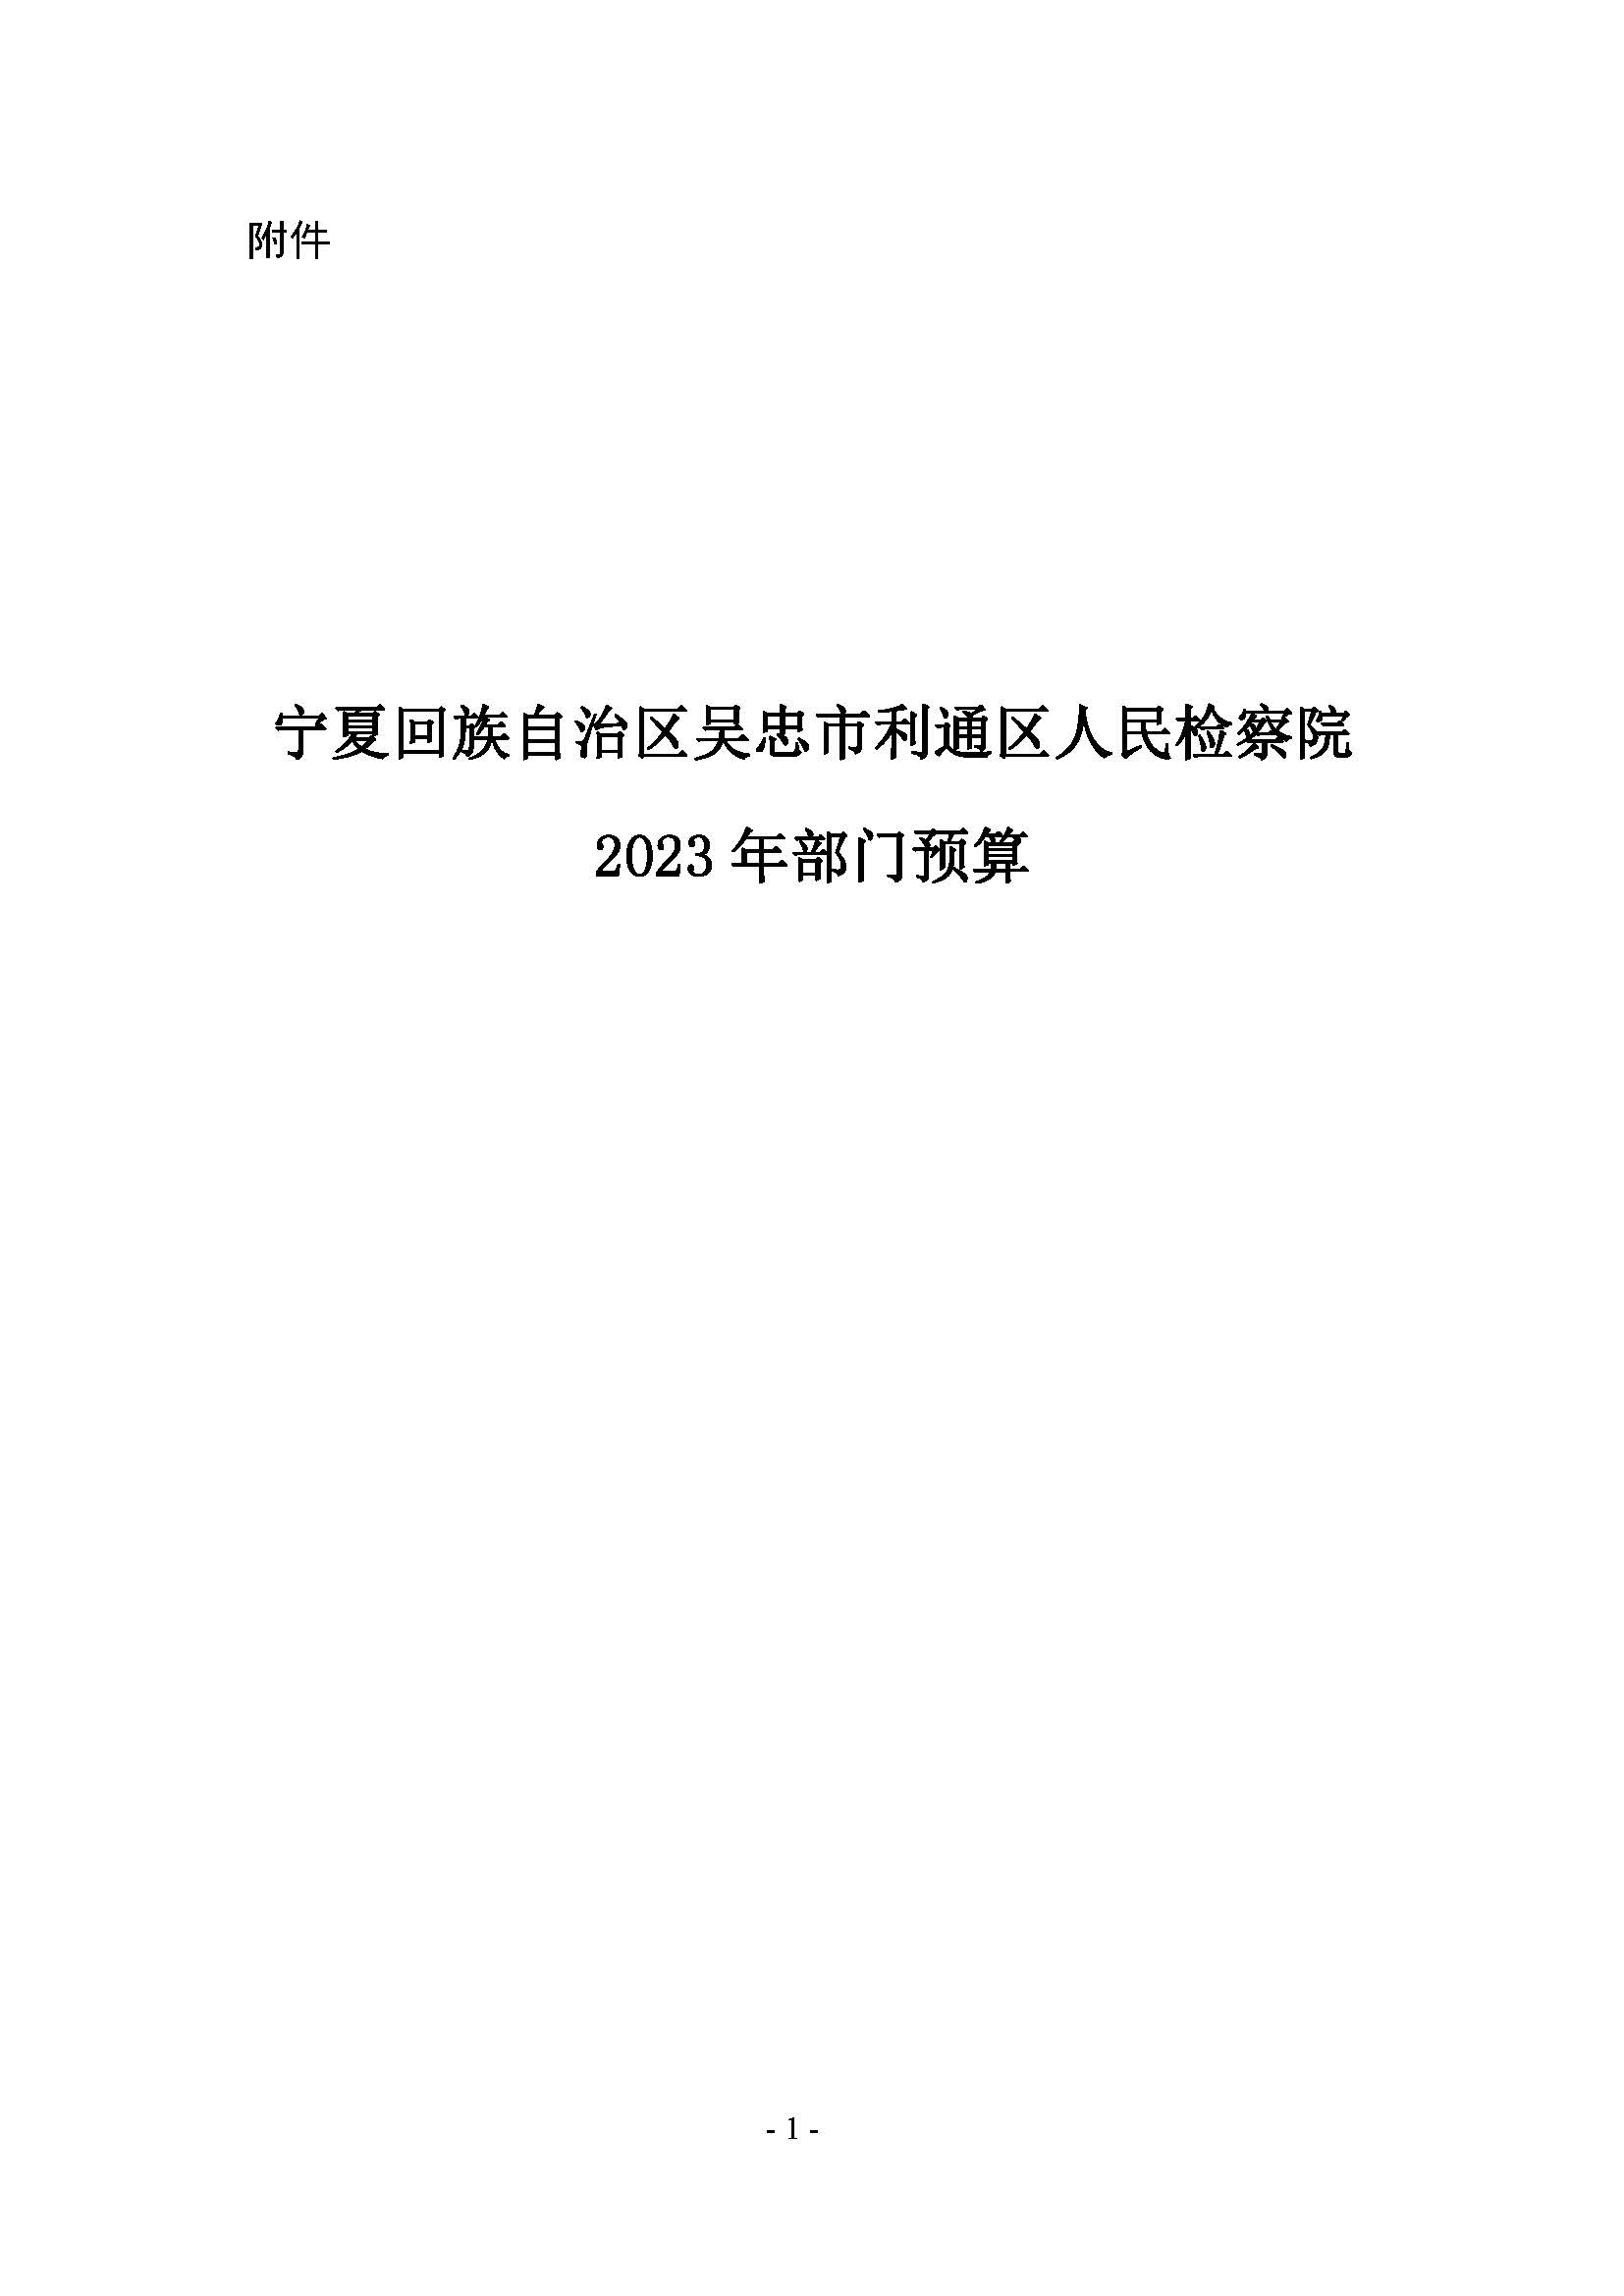 2.21吴忠市利通区人民检察院--2023部门预算信息公开_页面_01.jpg